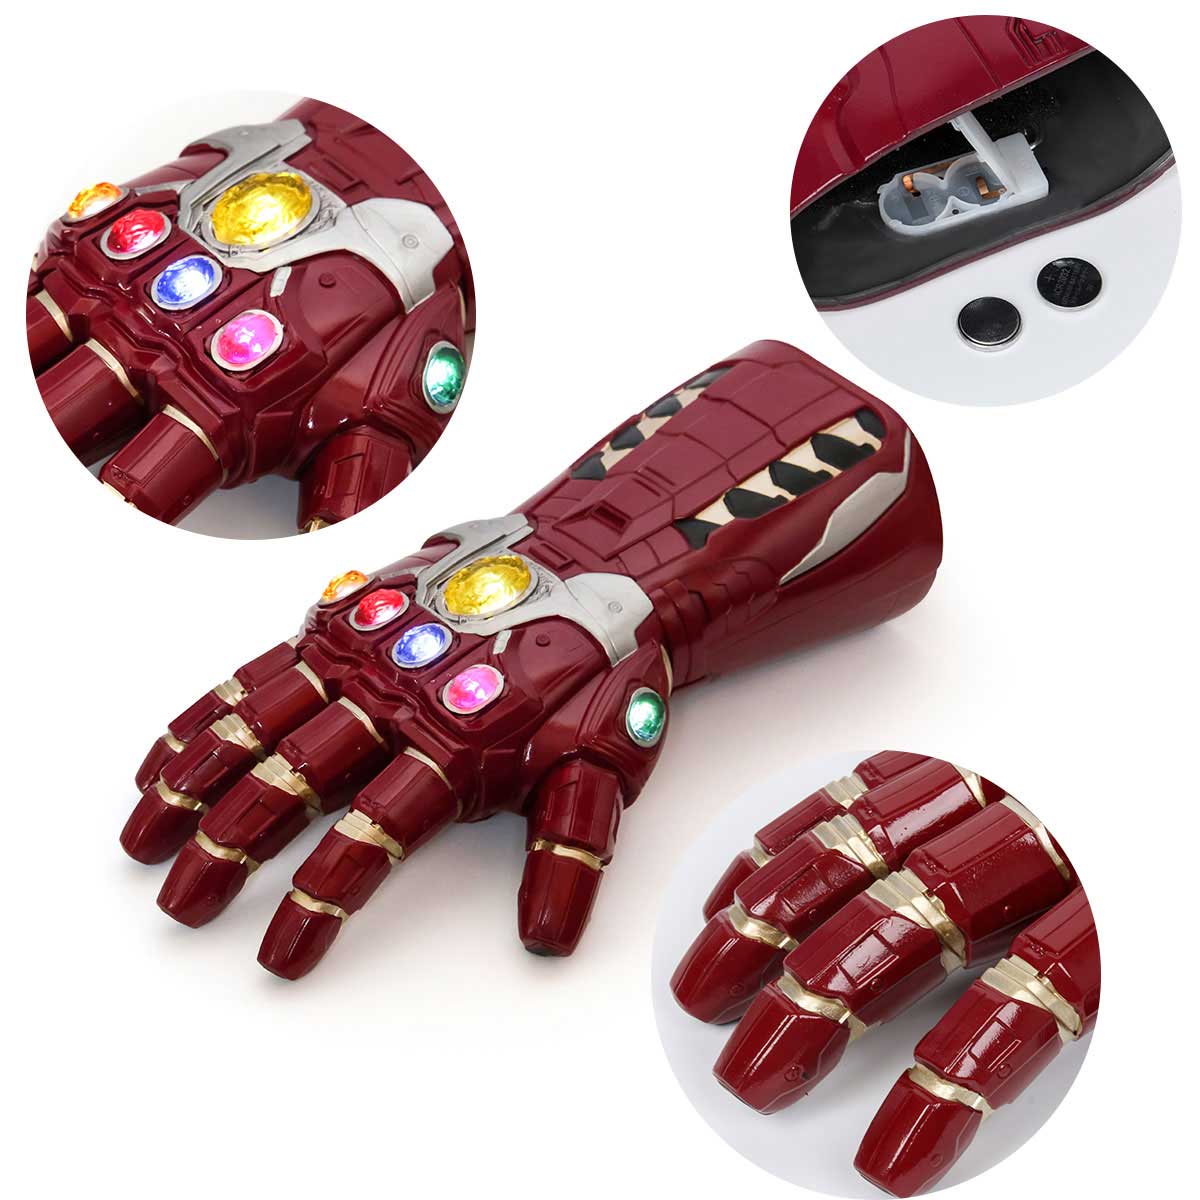 Avengers 4 Endgame Iron Man Tony Stark Led Gloves